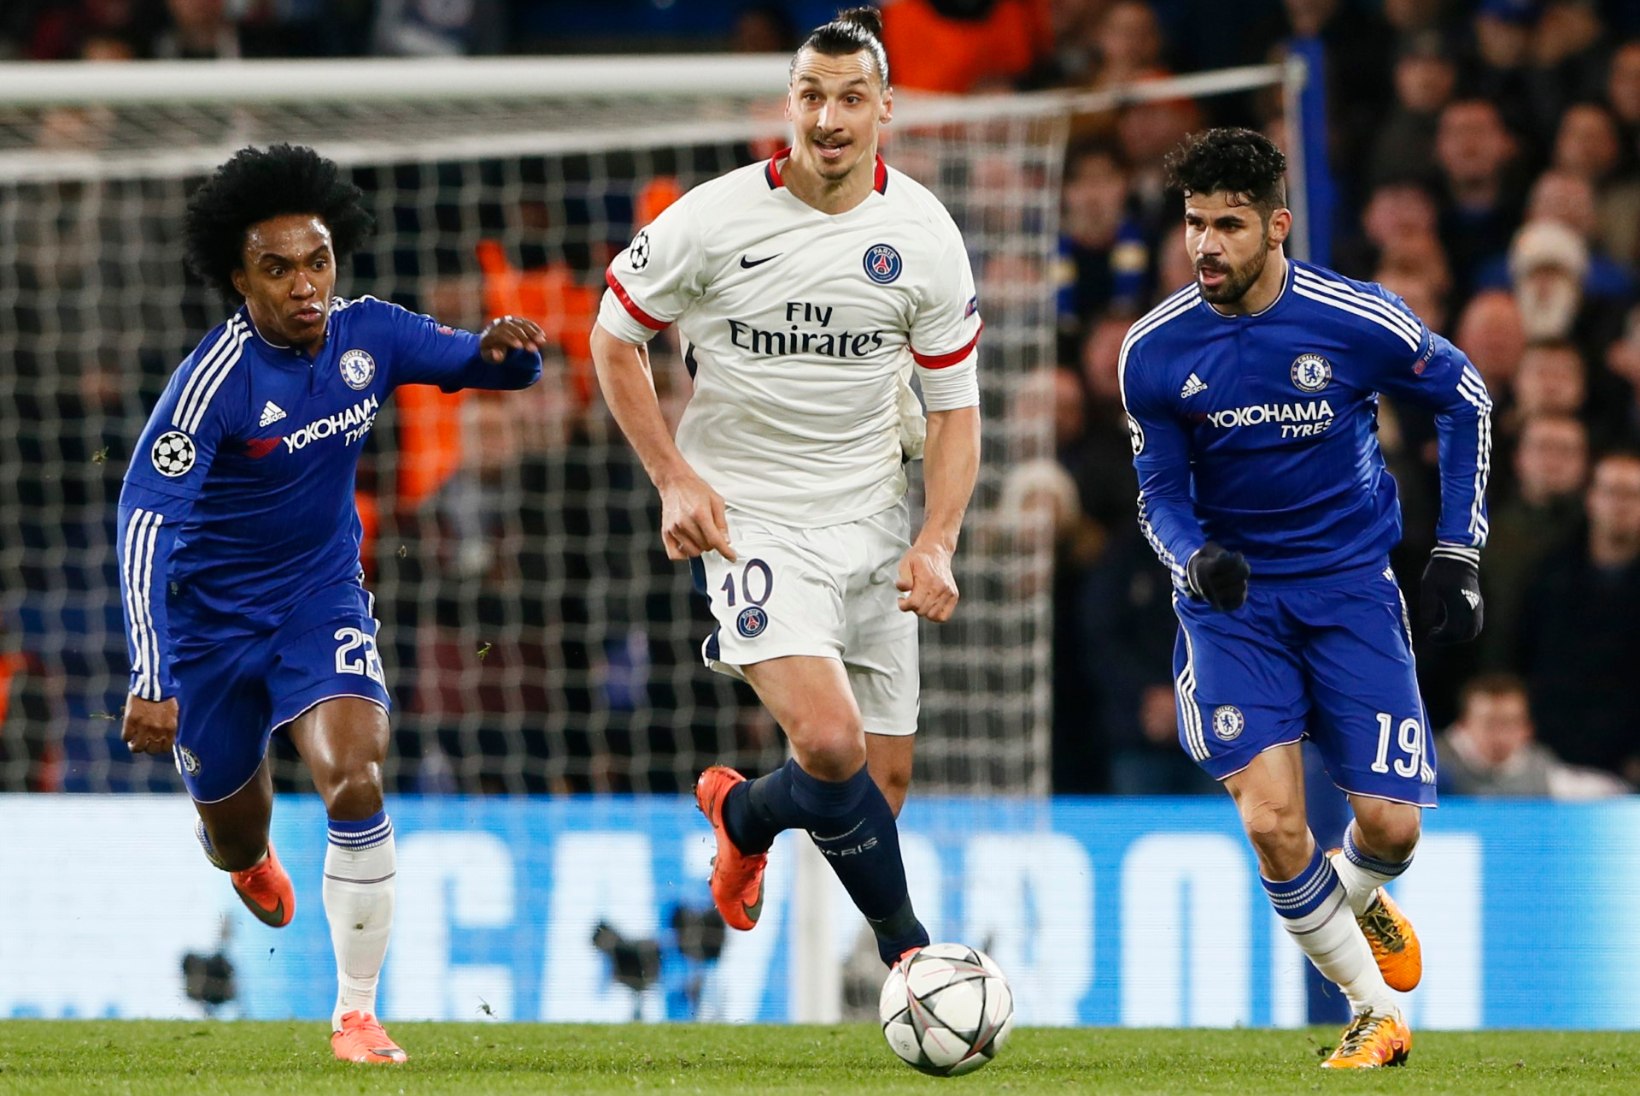 GALERII | PSG andis Chelseale lootust, kuid ilusa tähiseni jõudnud Zlatan tõmbas sellele vee peale